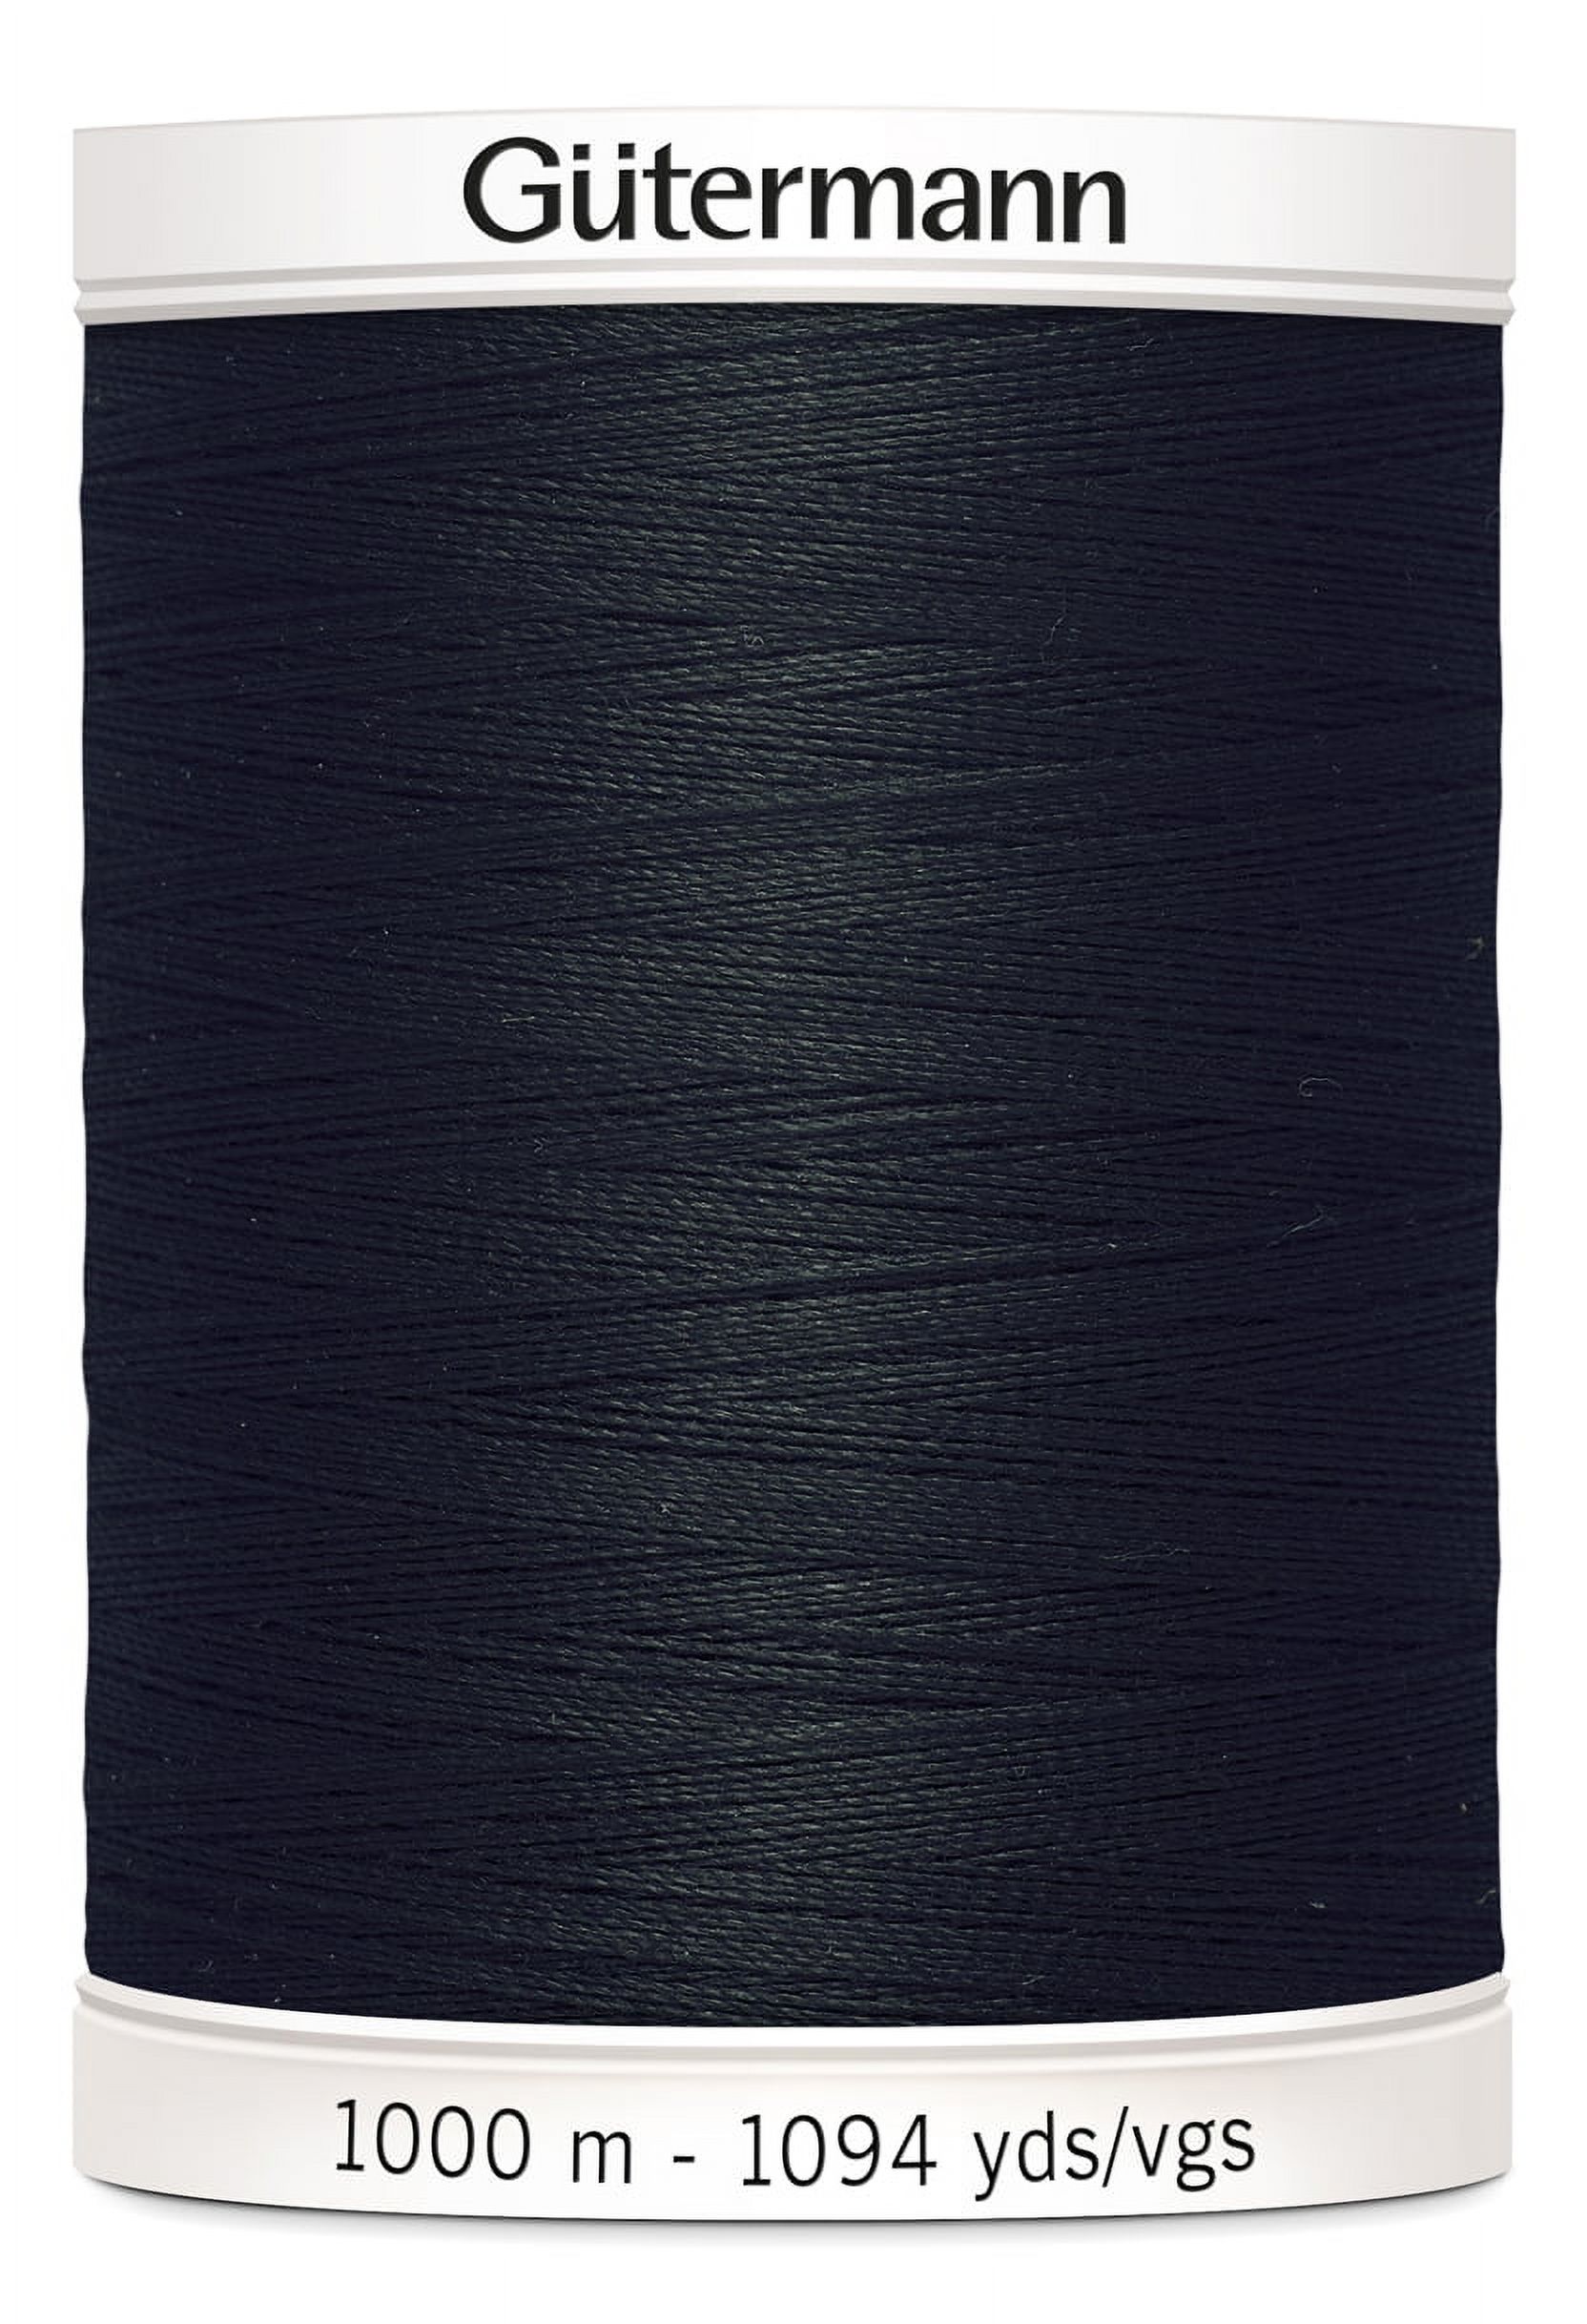 Gutermann Sew-All Black Thread, 1094 yd. - image 1 of 2